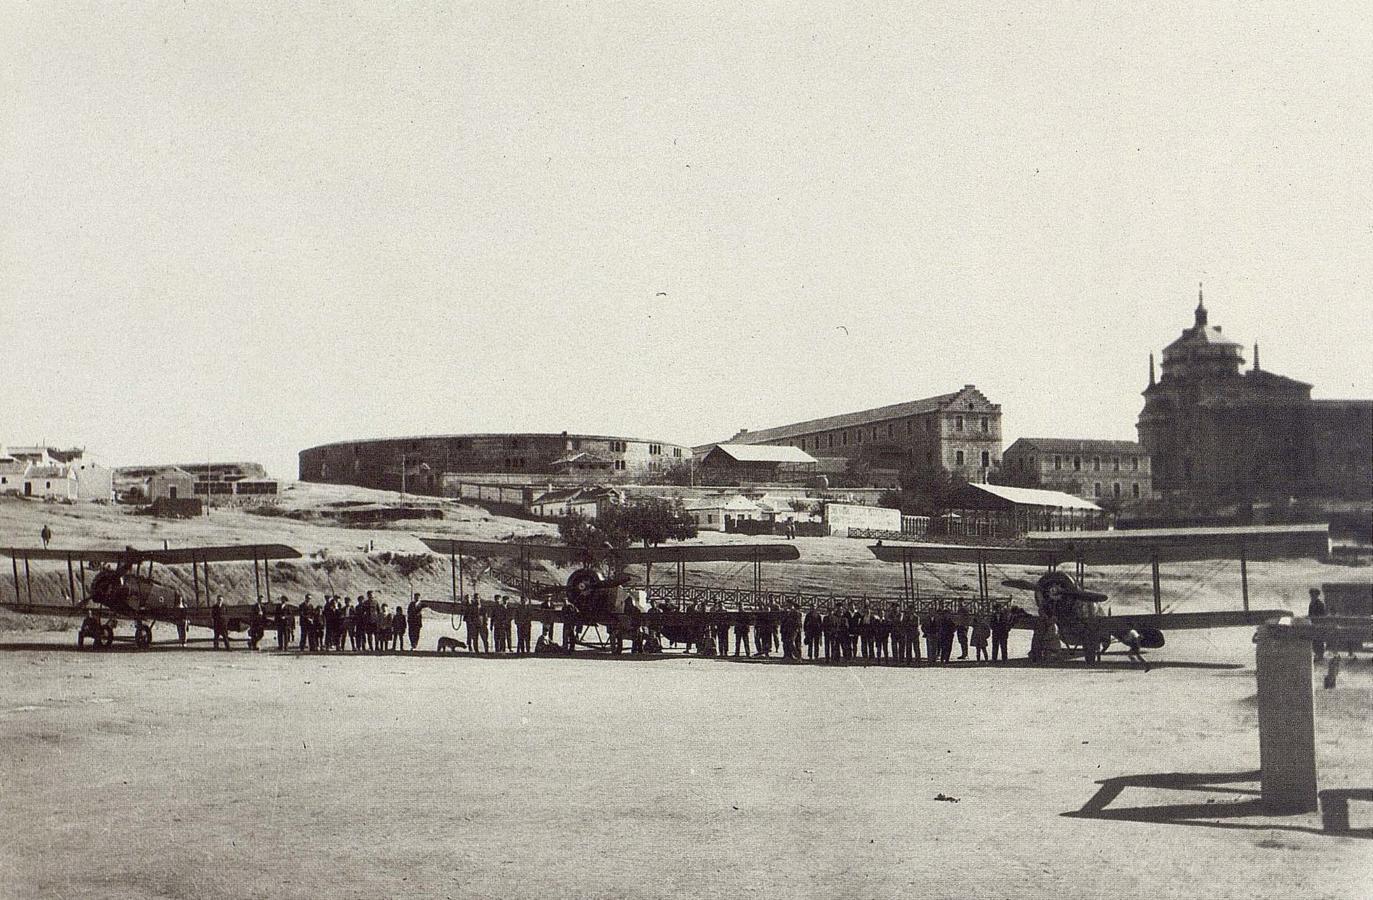 Aviones Avro de la Escuela de Alcalá de Henares en el Polígono de Tiro de Toledo el 25 de octubre de 1924. Fotografía de Rodríguez. Archivo Histórico Provincial de Toledo. 